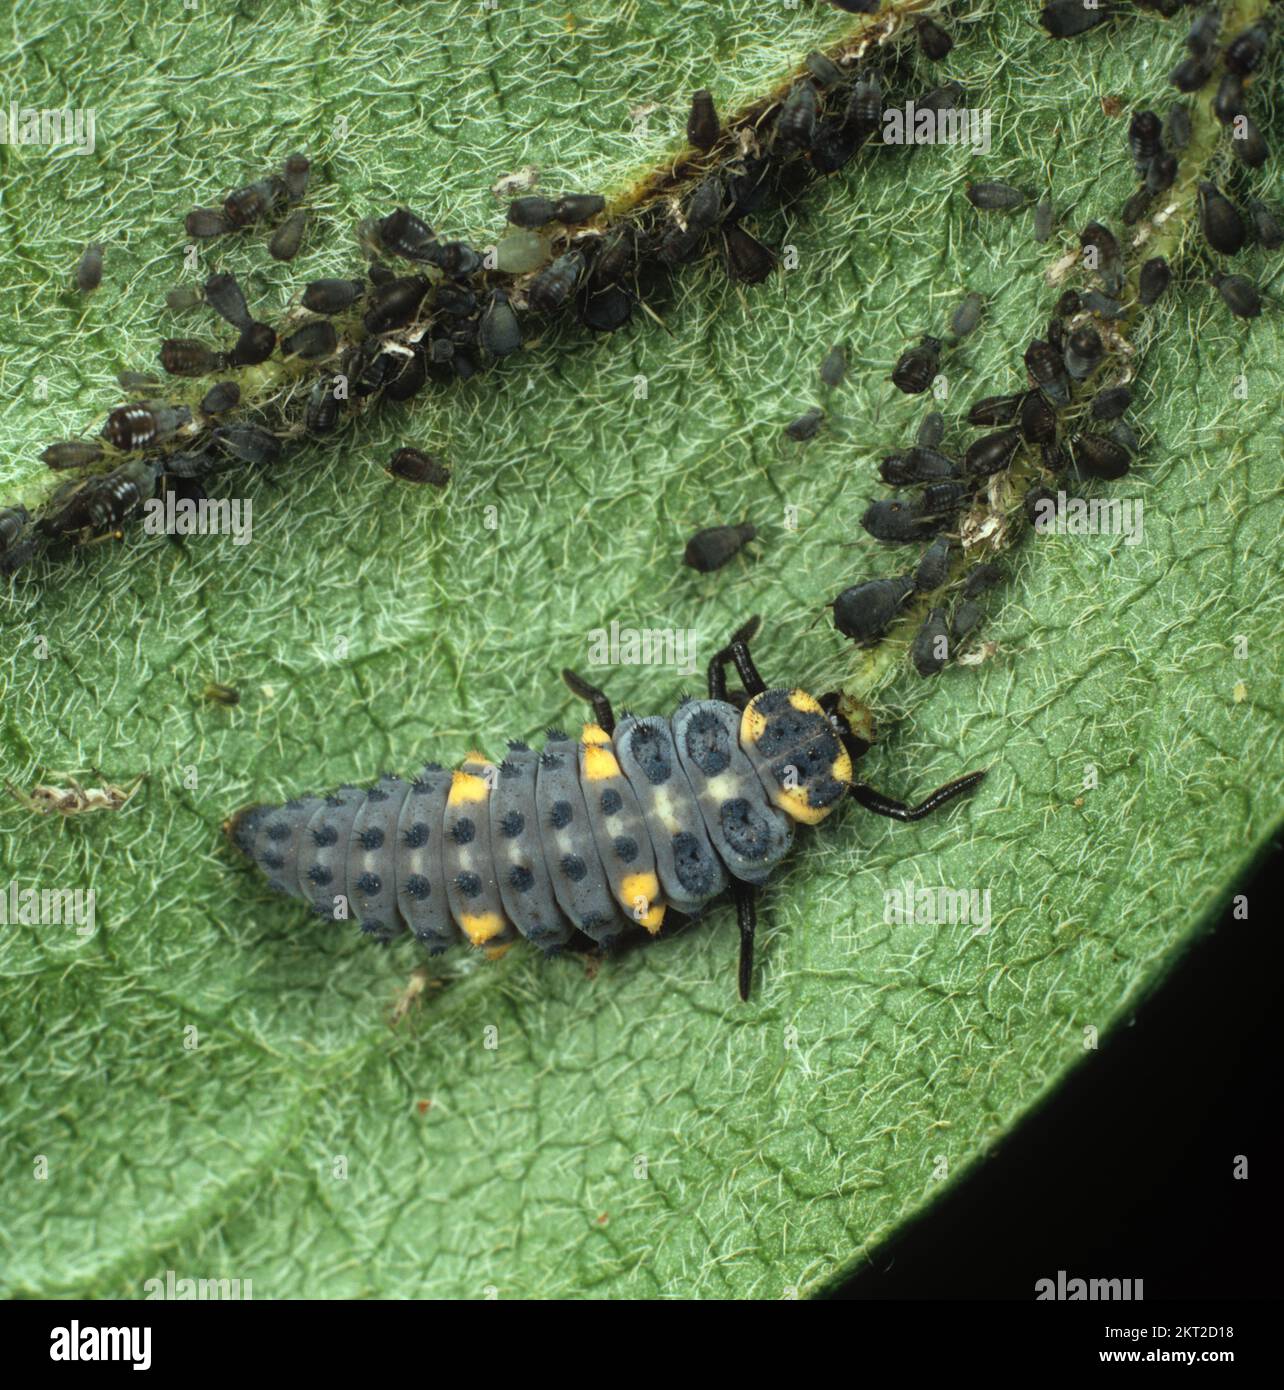 Larva de insecto depredador de siete manchas (Coccinella septumpunctata) que se alimenta de la presa de los áfidos de frijol negro (APHIS fabae) Foto de stock